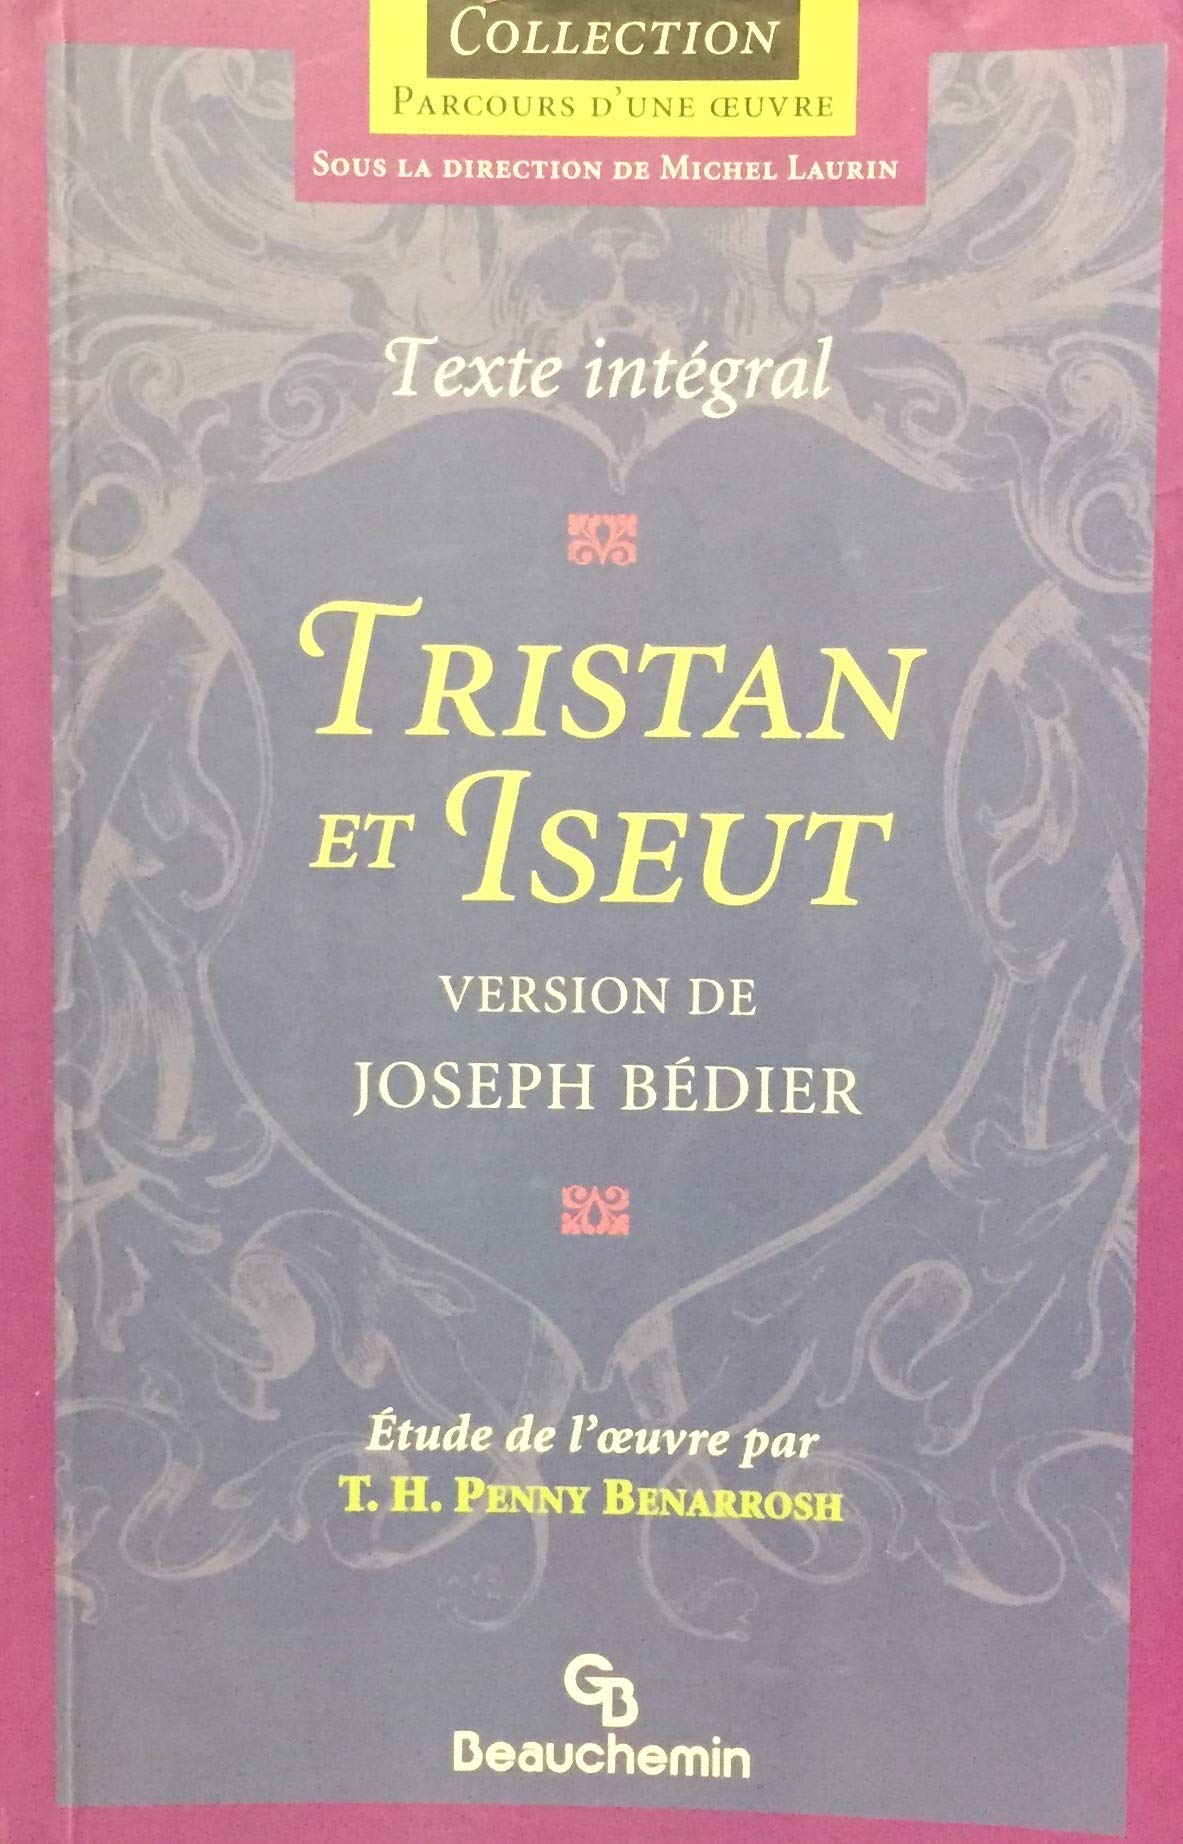 Parcours d'une Oeuvre : Tristan et Iseut - Texte intégral - Joseph Bédier